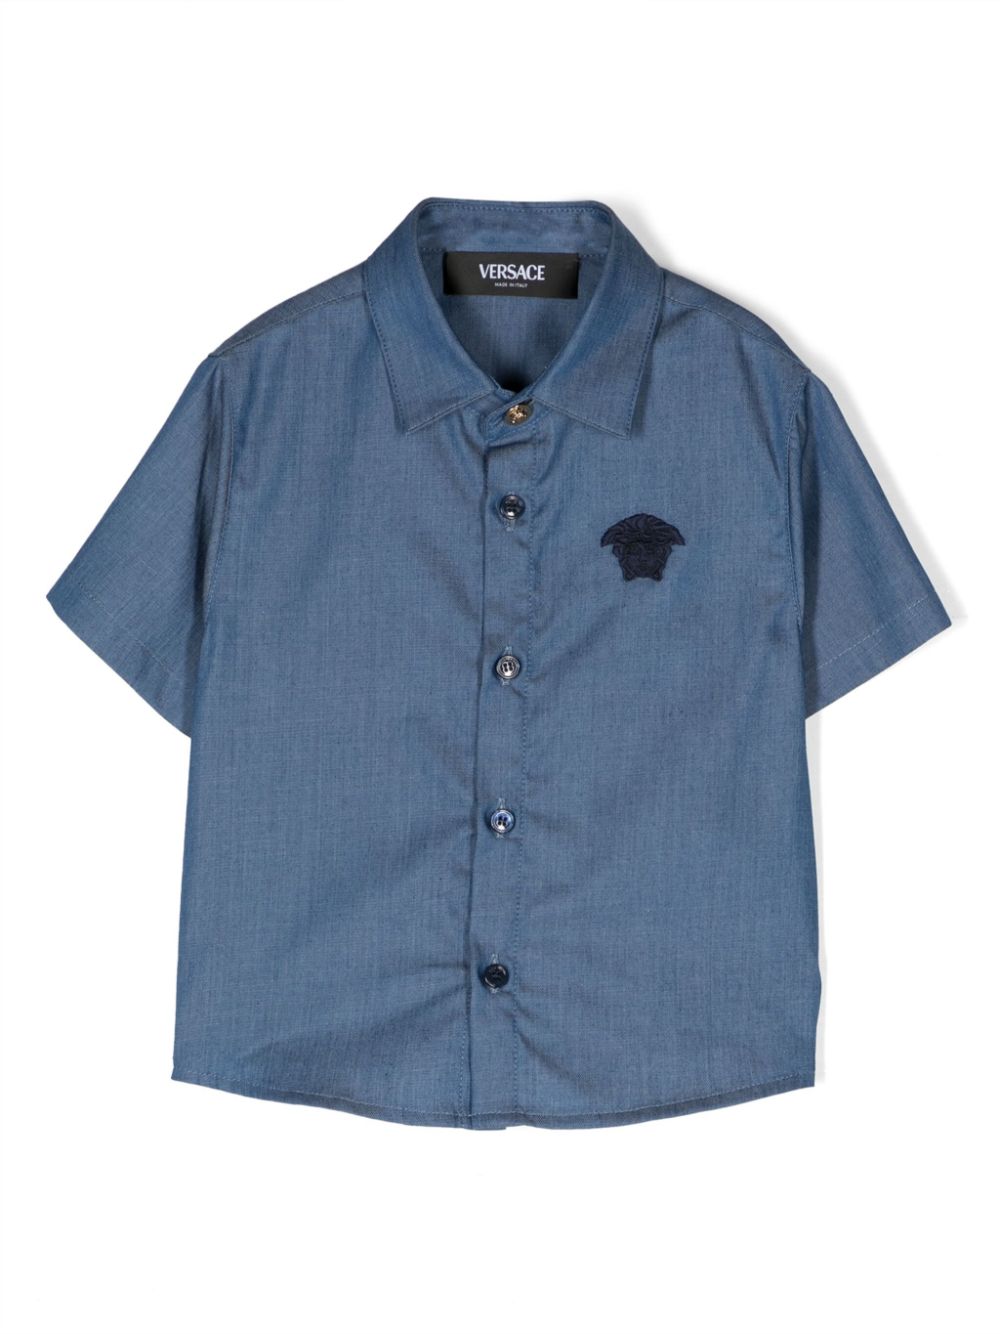 Camicia azzurra per neonato con logo